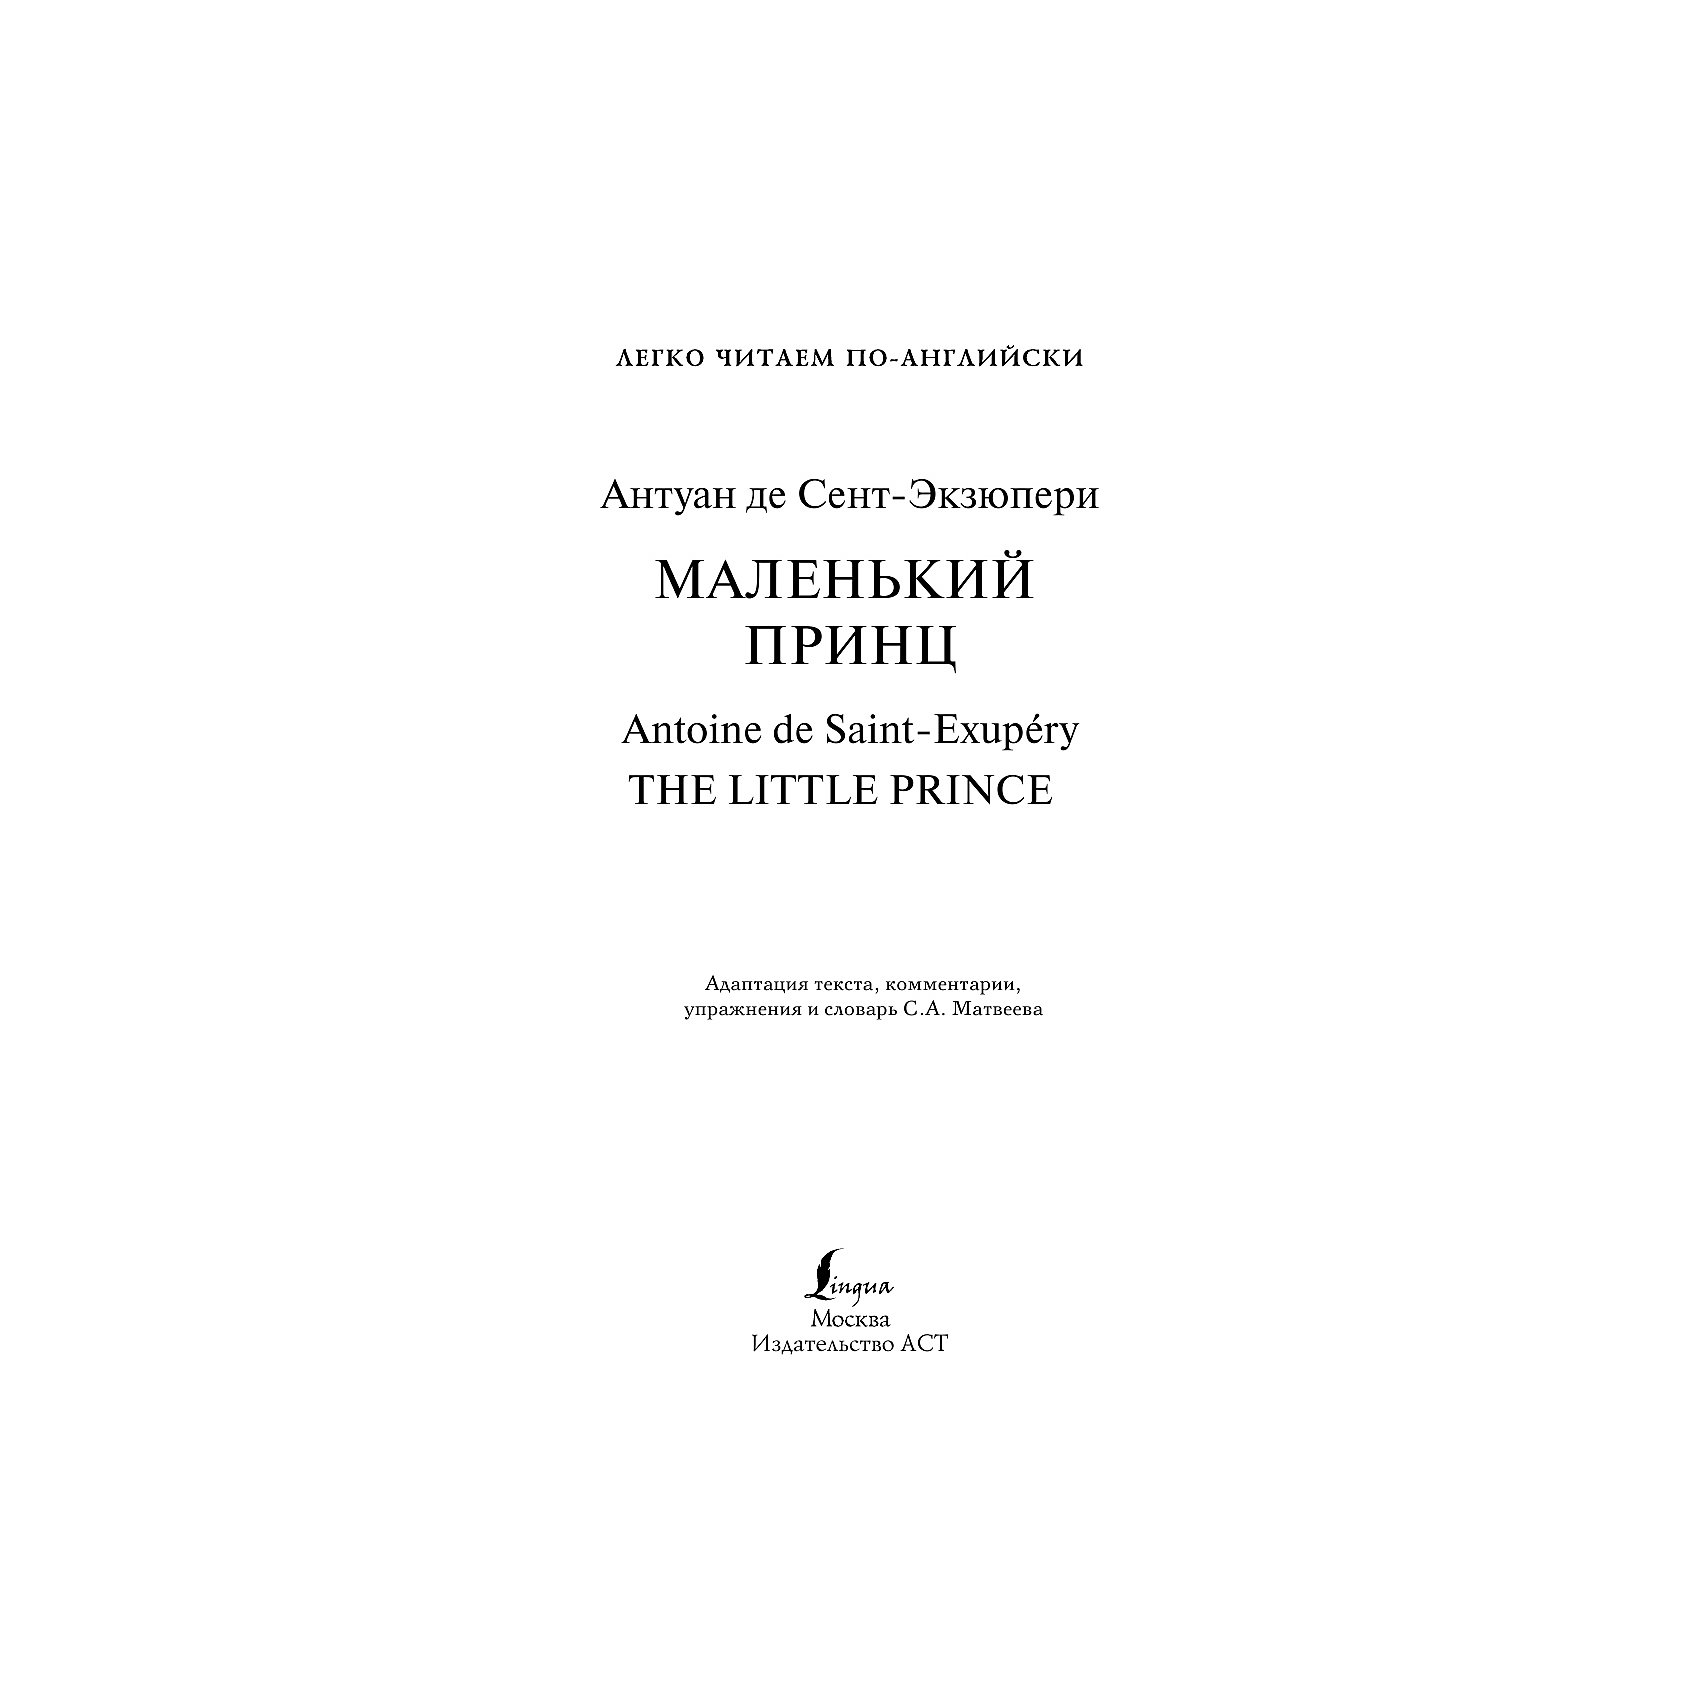 фото Легко читаем по-английски Уровень 2 "Маленький принц. The Little Prince", Сент-Экзюпери А. де Издательство аст